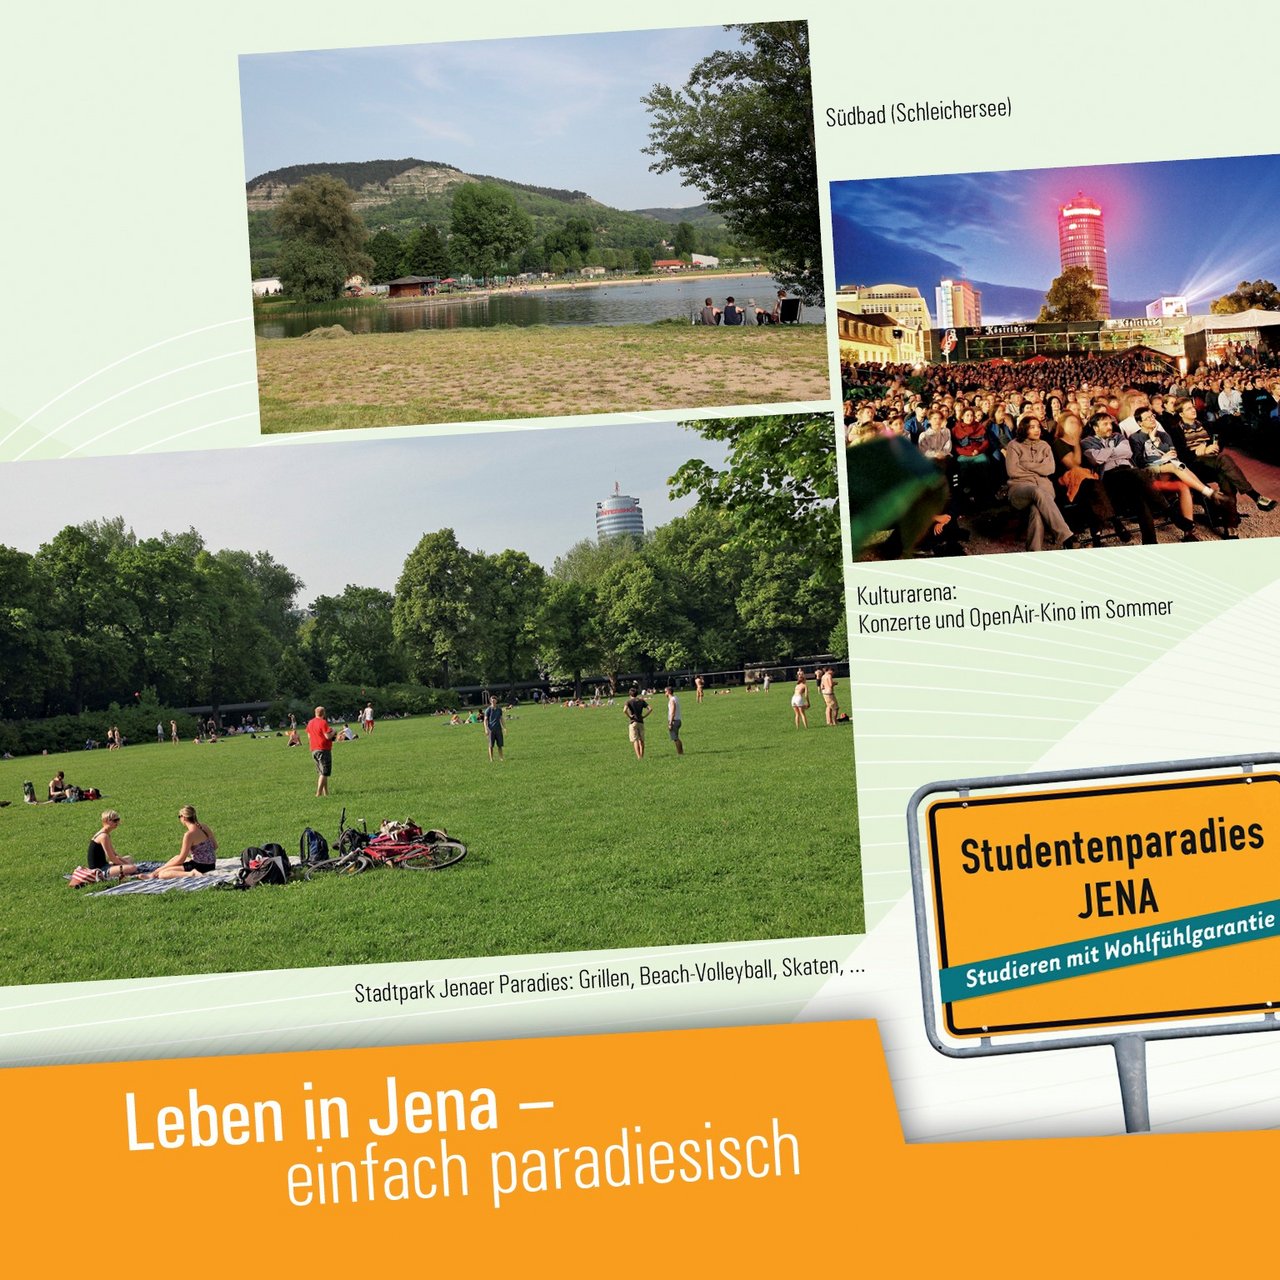 Startseite der Broschüre "Leben in Jena"